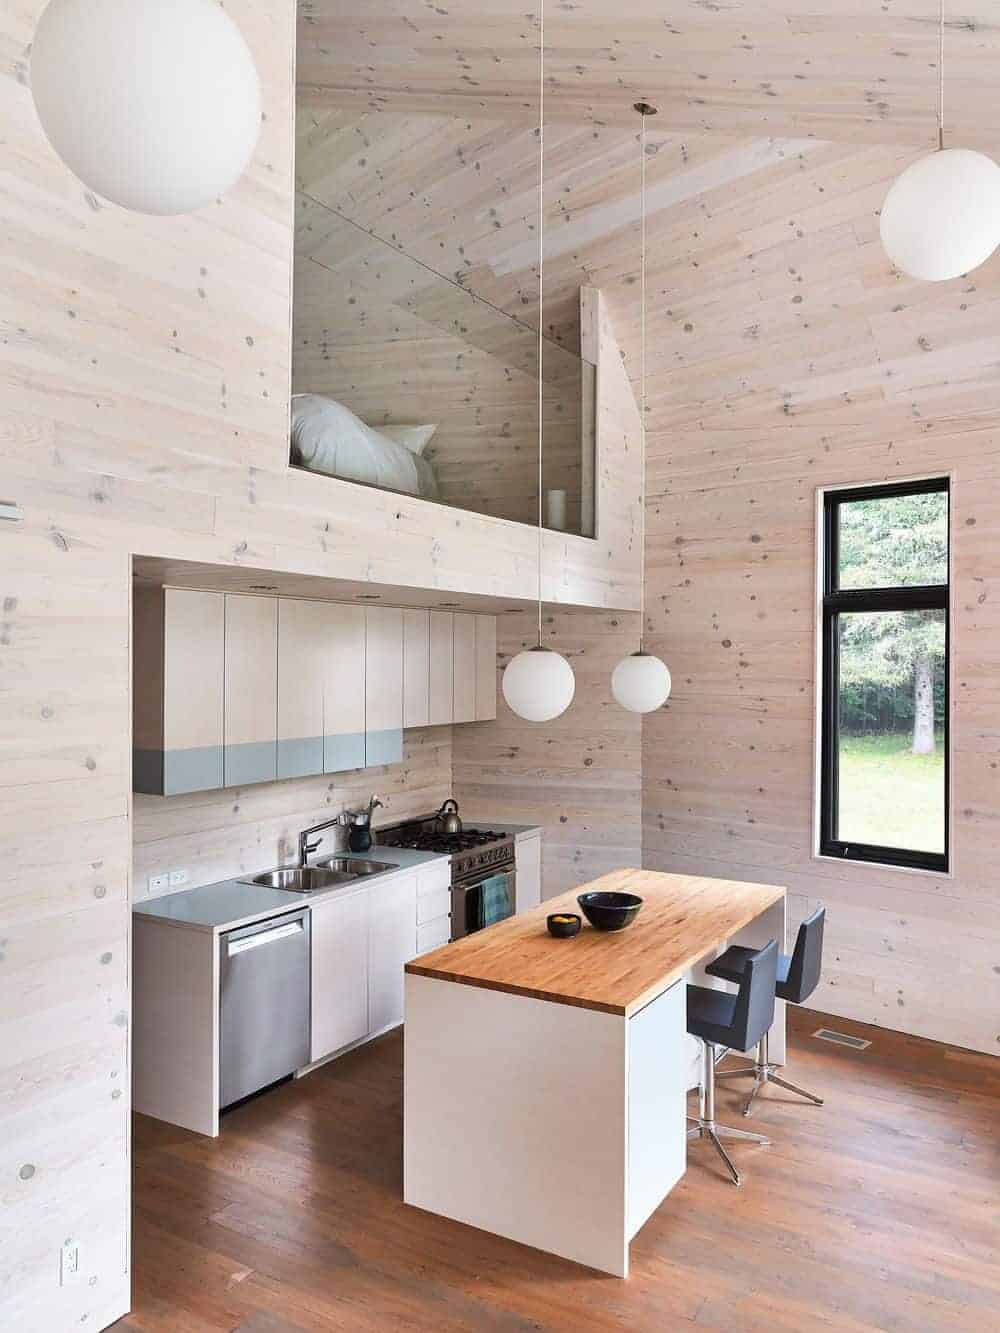 这间小厨房有一扇玻璃窗，高高的木板天花板上装有球形吊灯，厨房里有一个带黑色皮凳子的早餐座，正对着轻木橱柜。